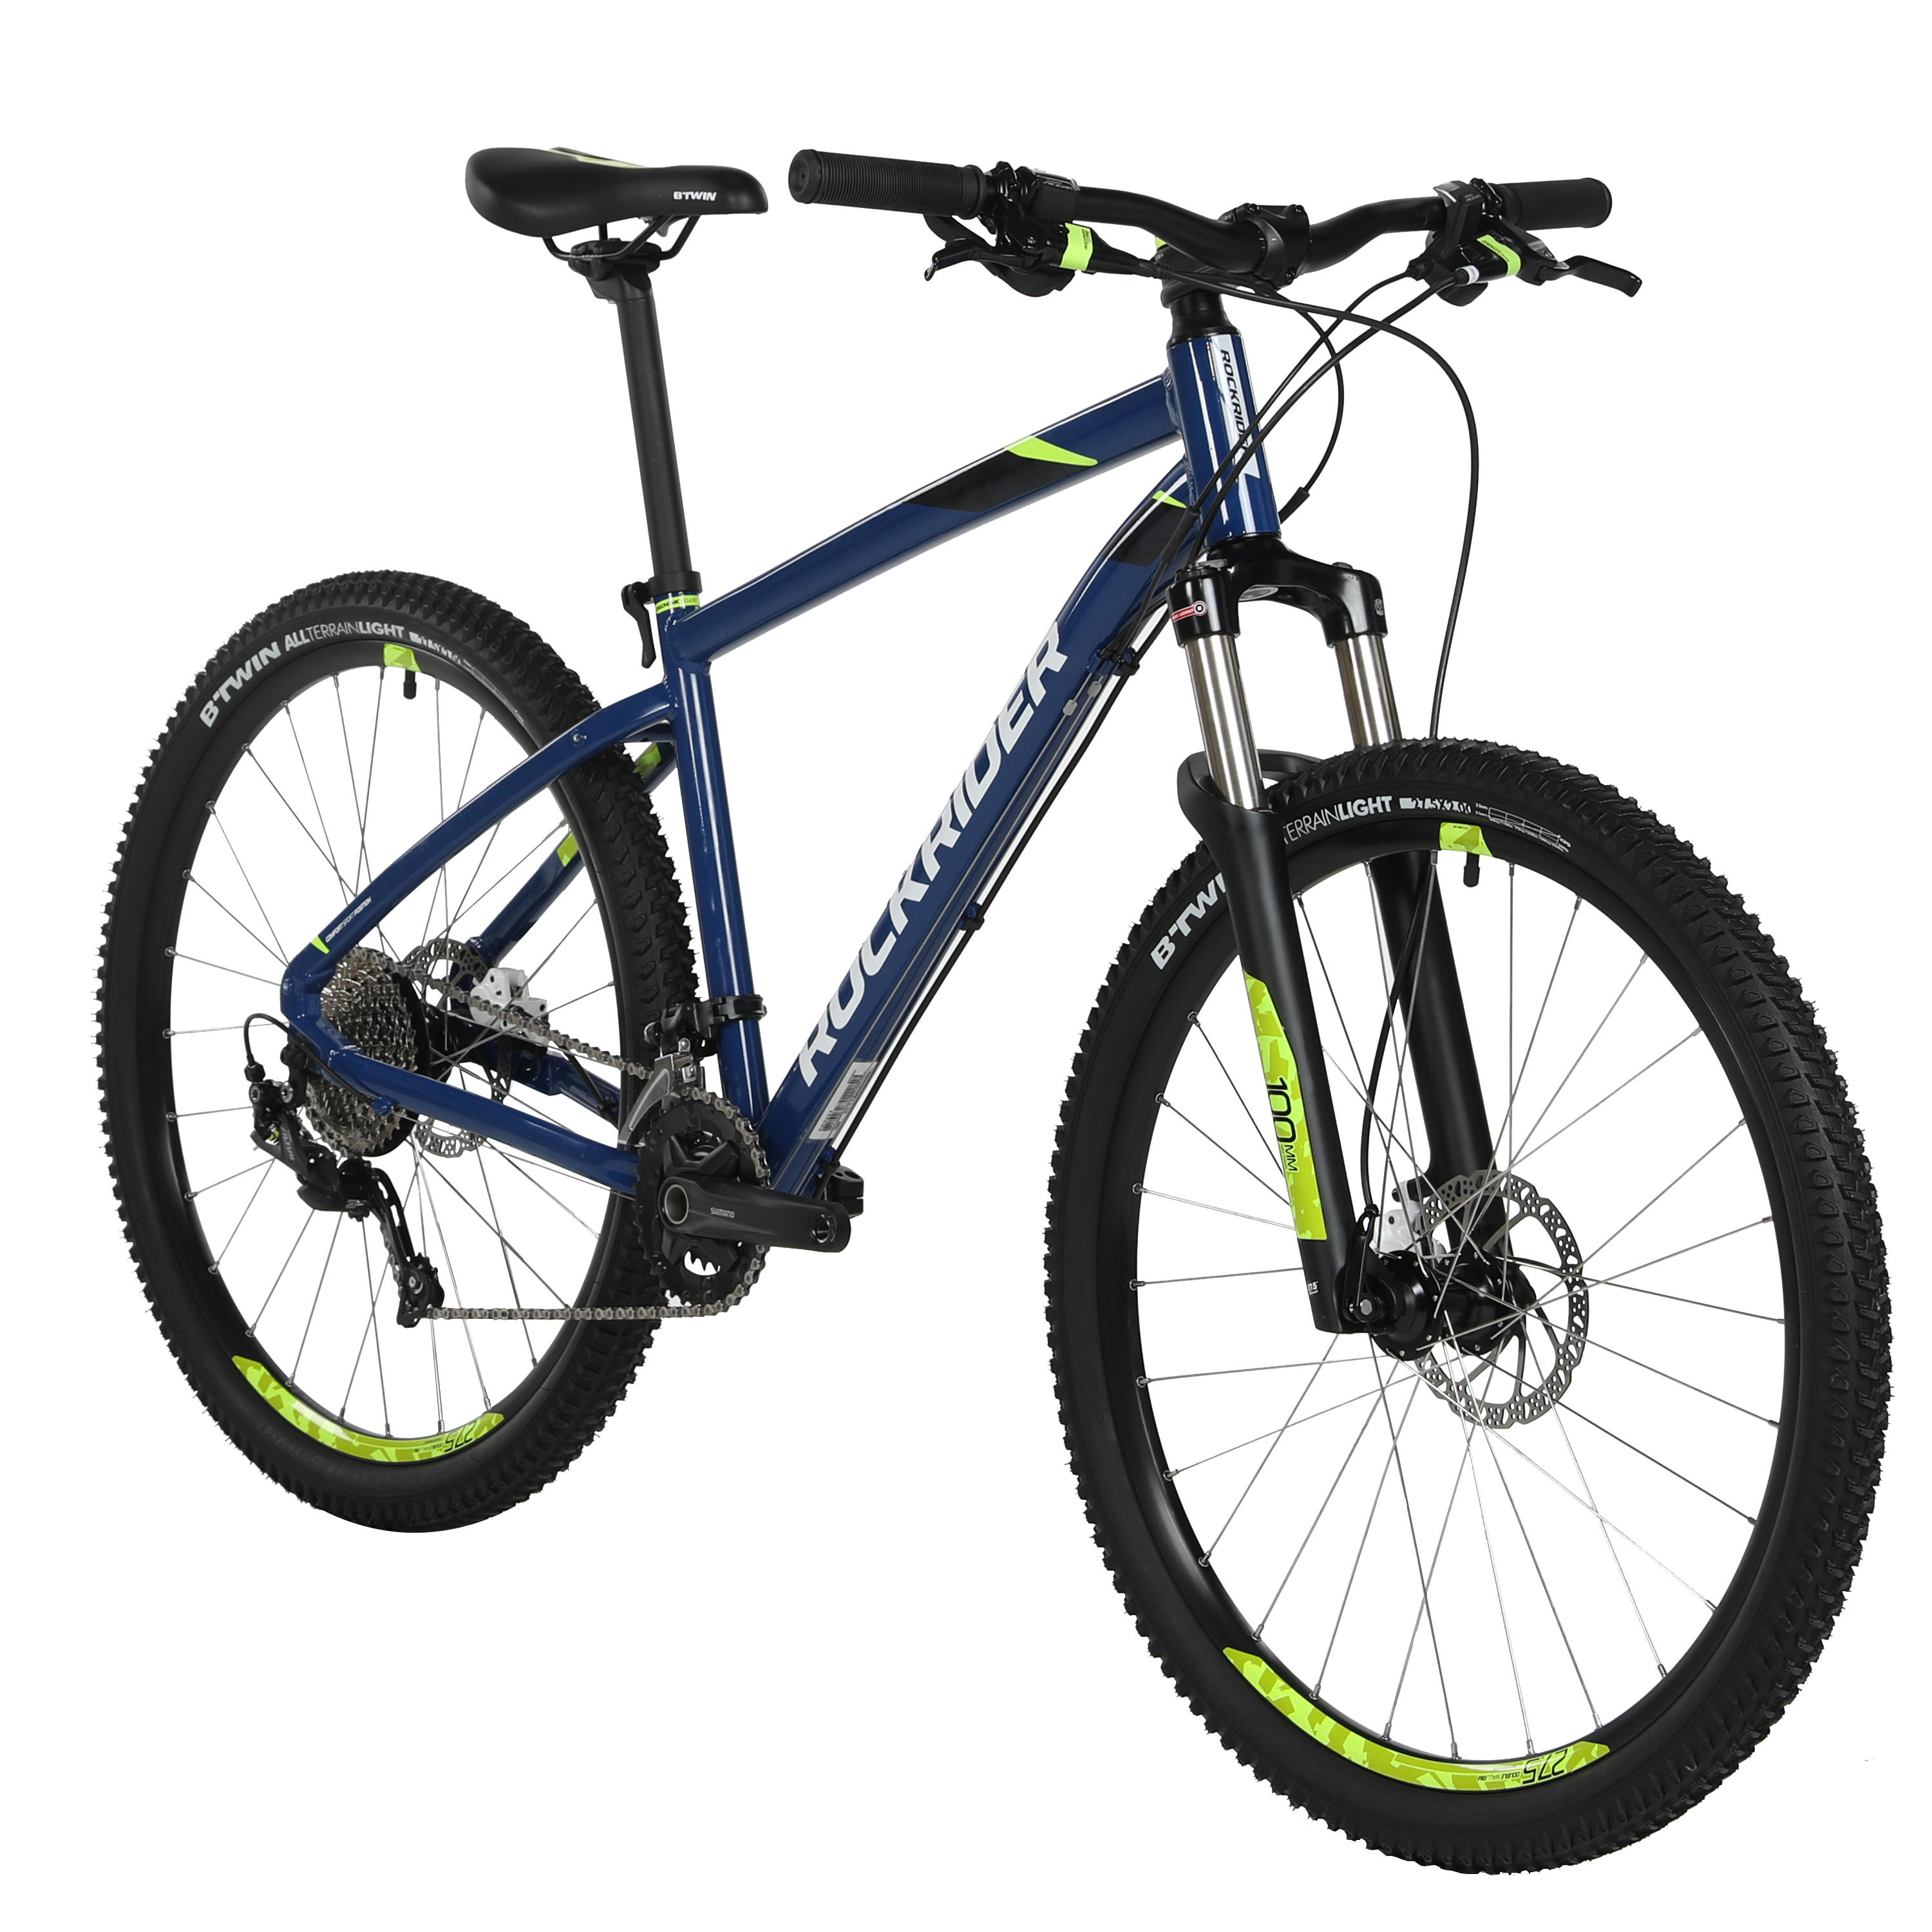 Rockrider ST 540 27.5 Mountain Bike 9sp 